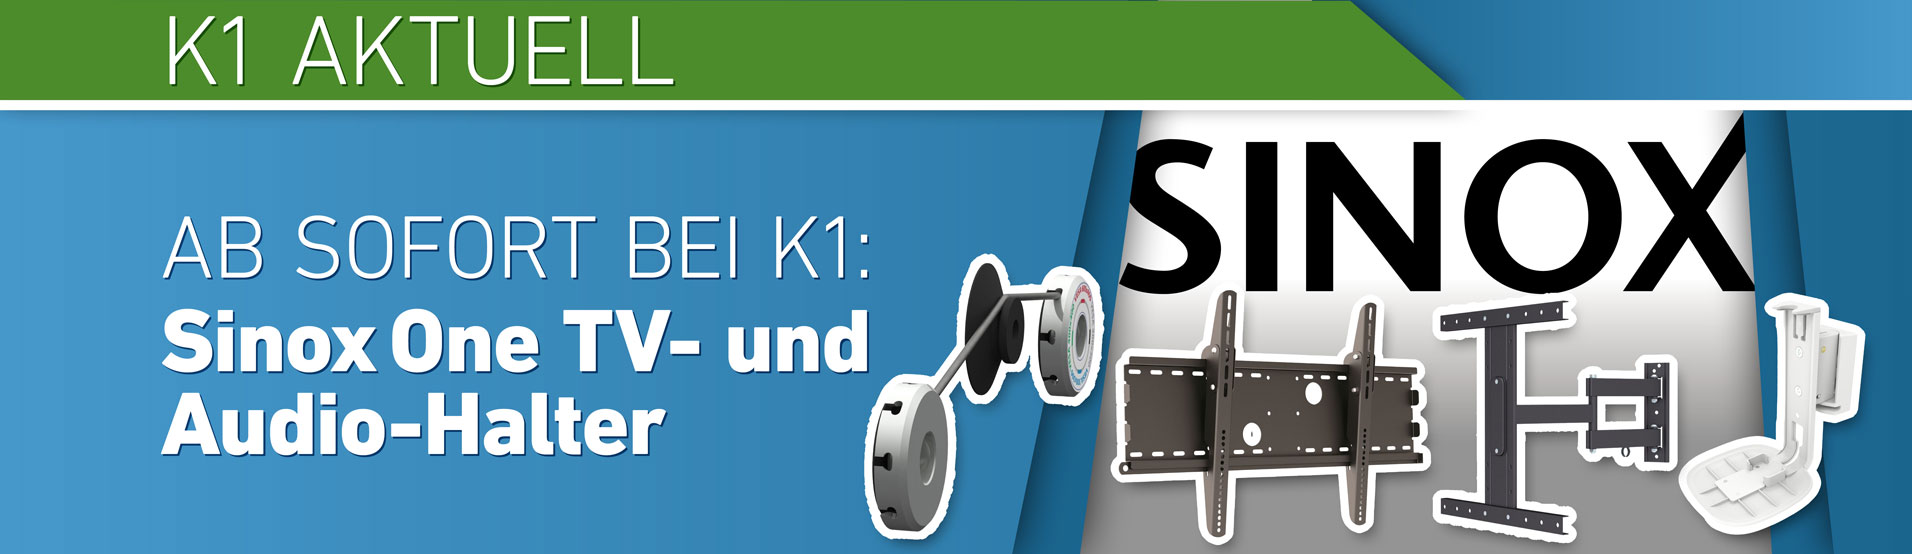 K1 Aktuell Sinox One TV- und Audio-Halter